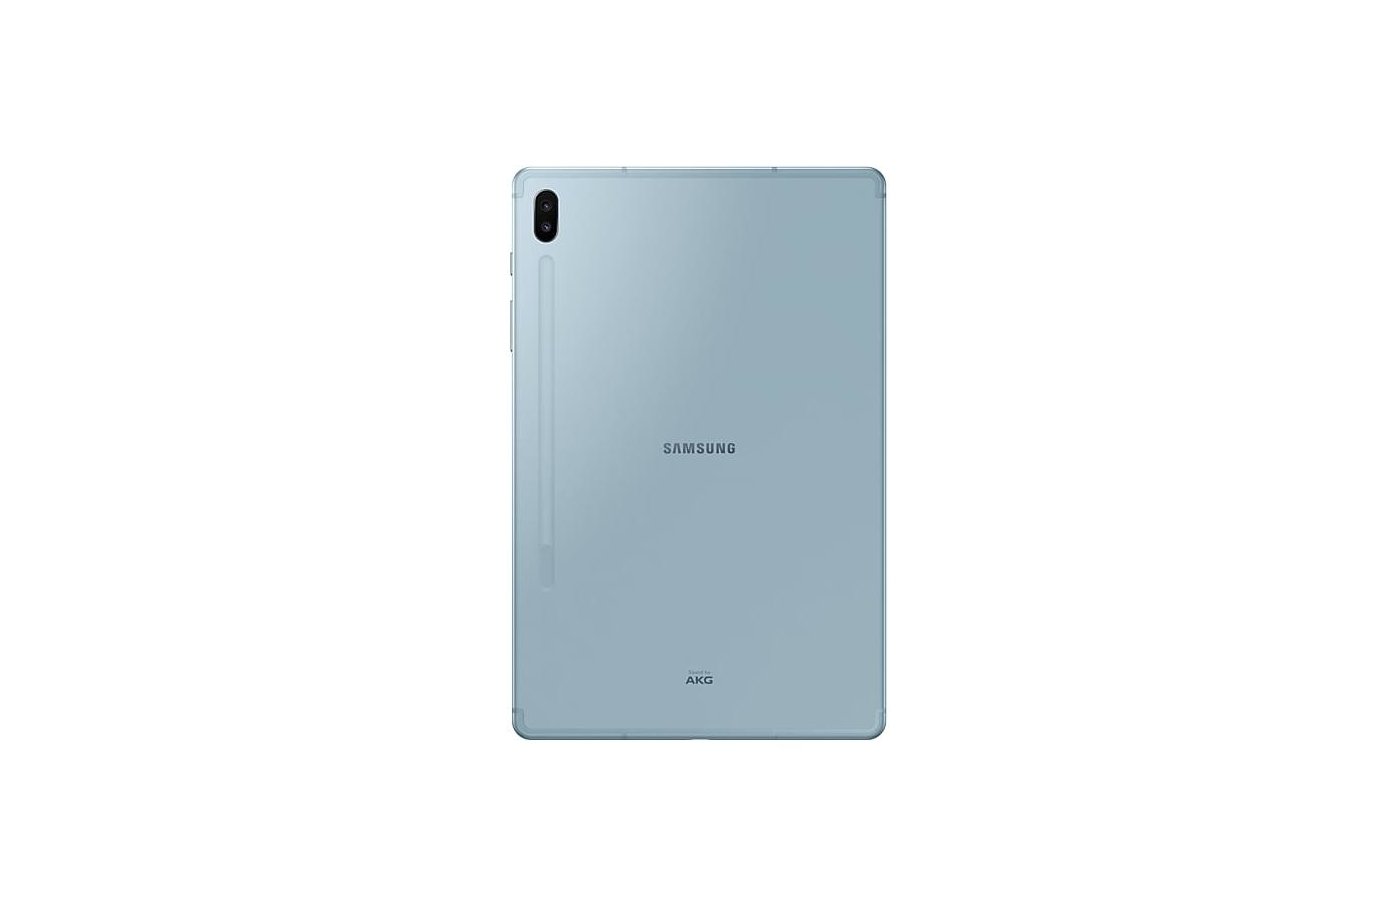 Samsung Galaxy Tab S 6 Купить